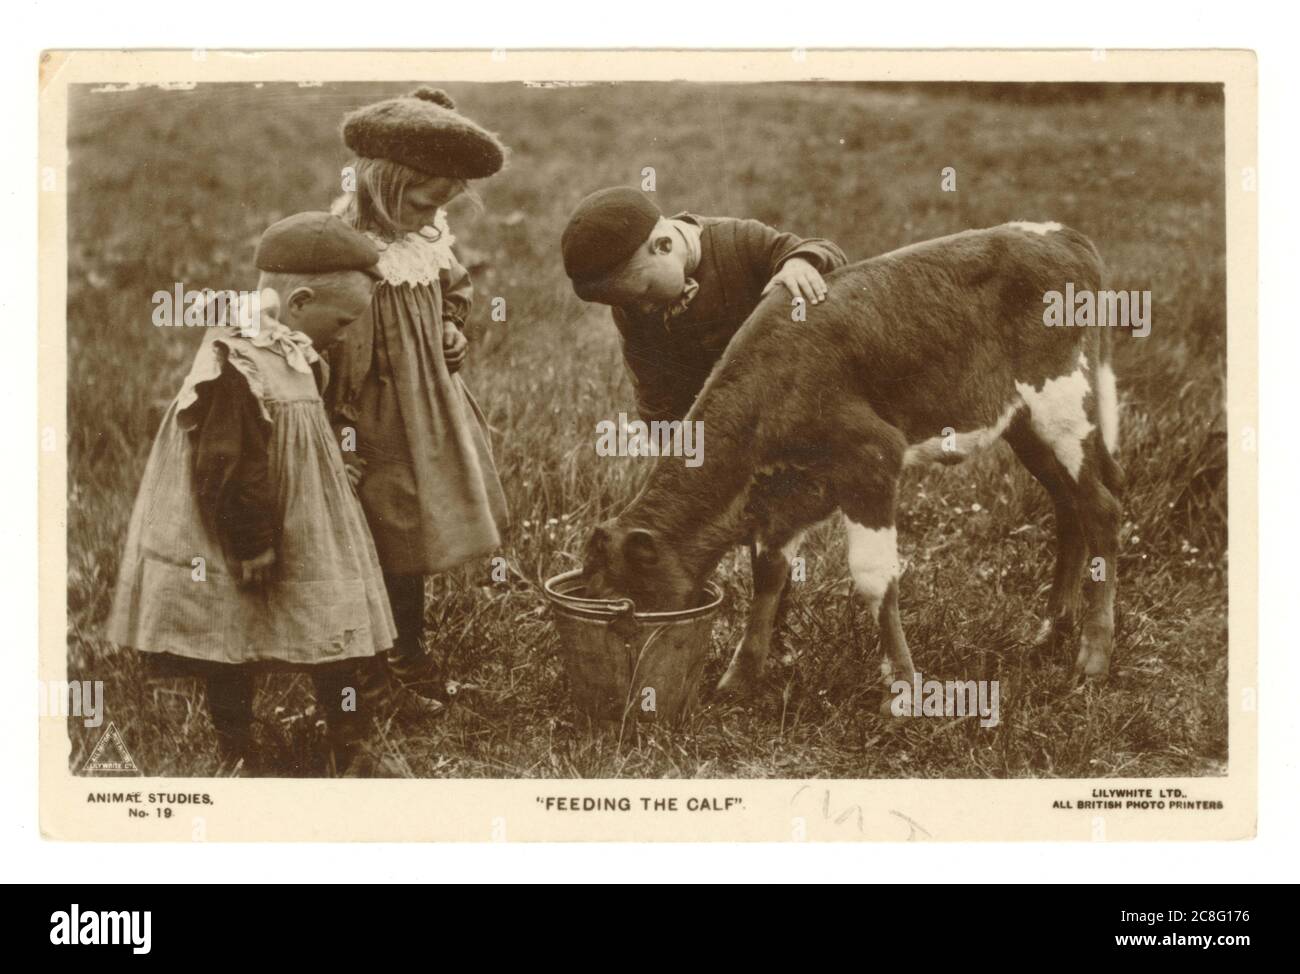 Grußkarte aus den frühen 1900er Jahren mit einer idyllischen Landszene, in der Kinder der 1920er im Freien dargestellt werden, die ein Kalb aus einem Eimer füttern. Das junge Mädchen trägt einen Tam-o'-Shanter-Hut, der in den frühen 1920er Jahren modisch war, und ein gesmocktes Kleid. Ein kleiner Junge trägt ein Kleid mit einer spitzen Kappe, während sein älterer Bruder mehr jungenhafte Kleidung und eine spitze Kappe trägt, die am 17. Mai 1921 veröffentlicht wurde. Stockfoto